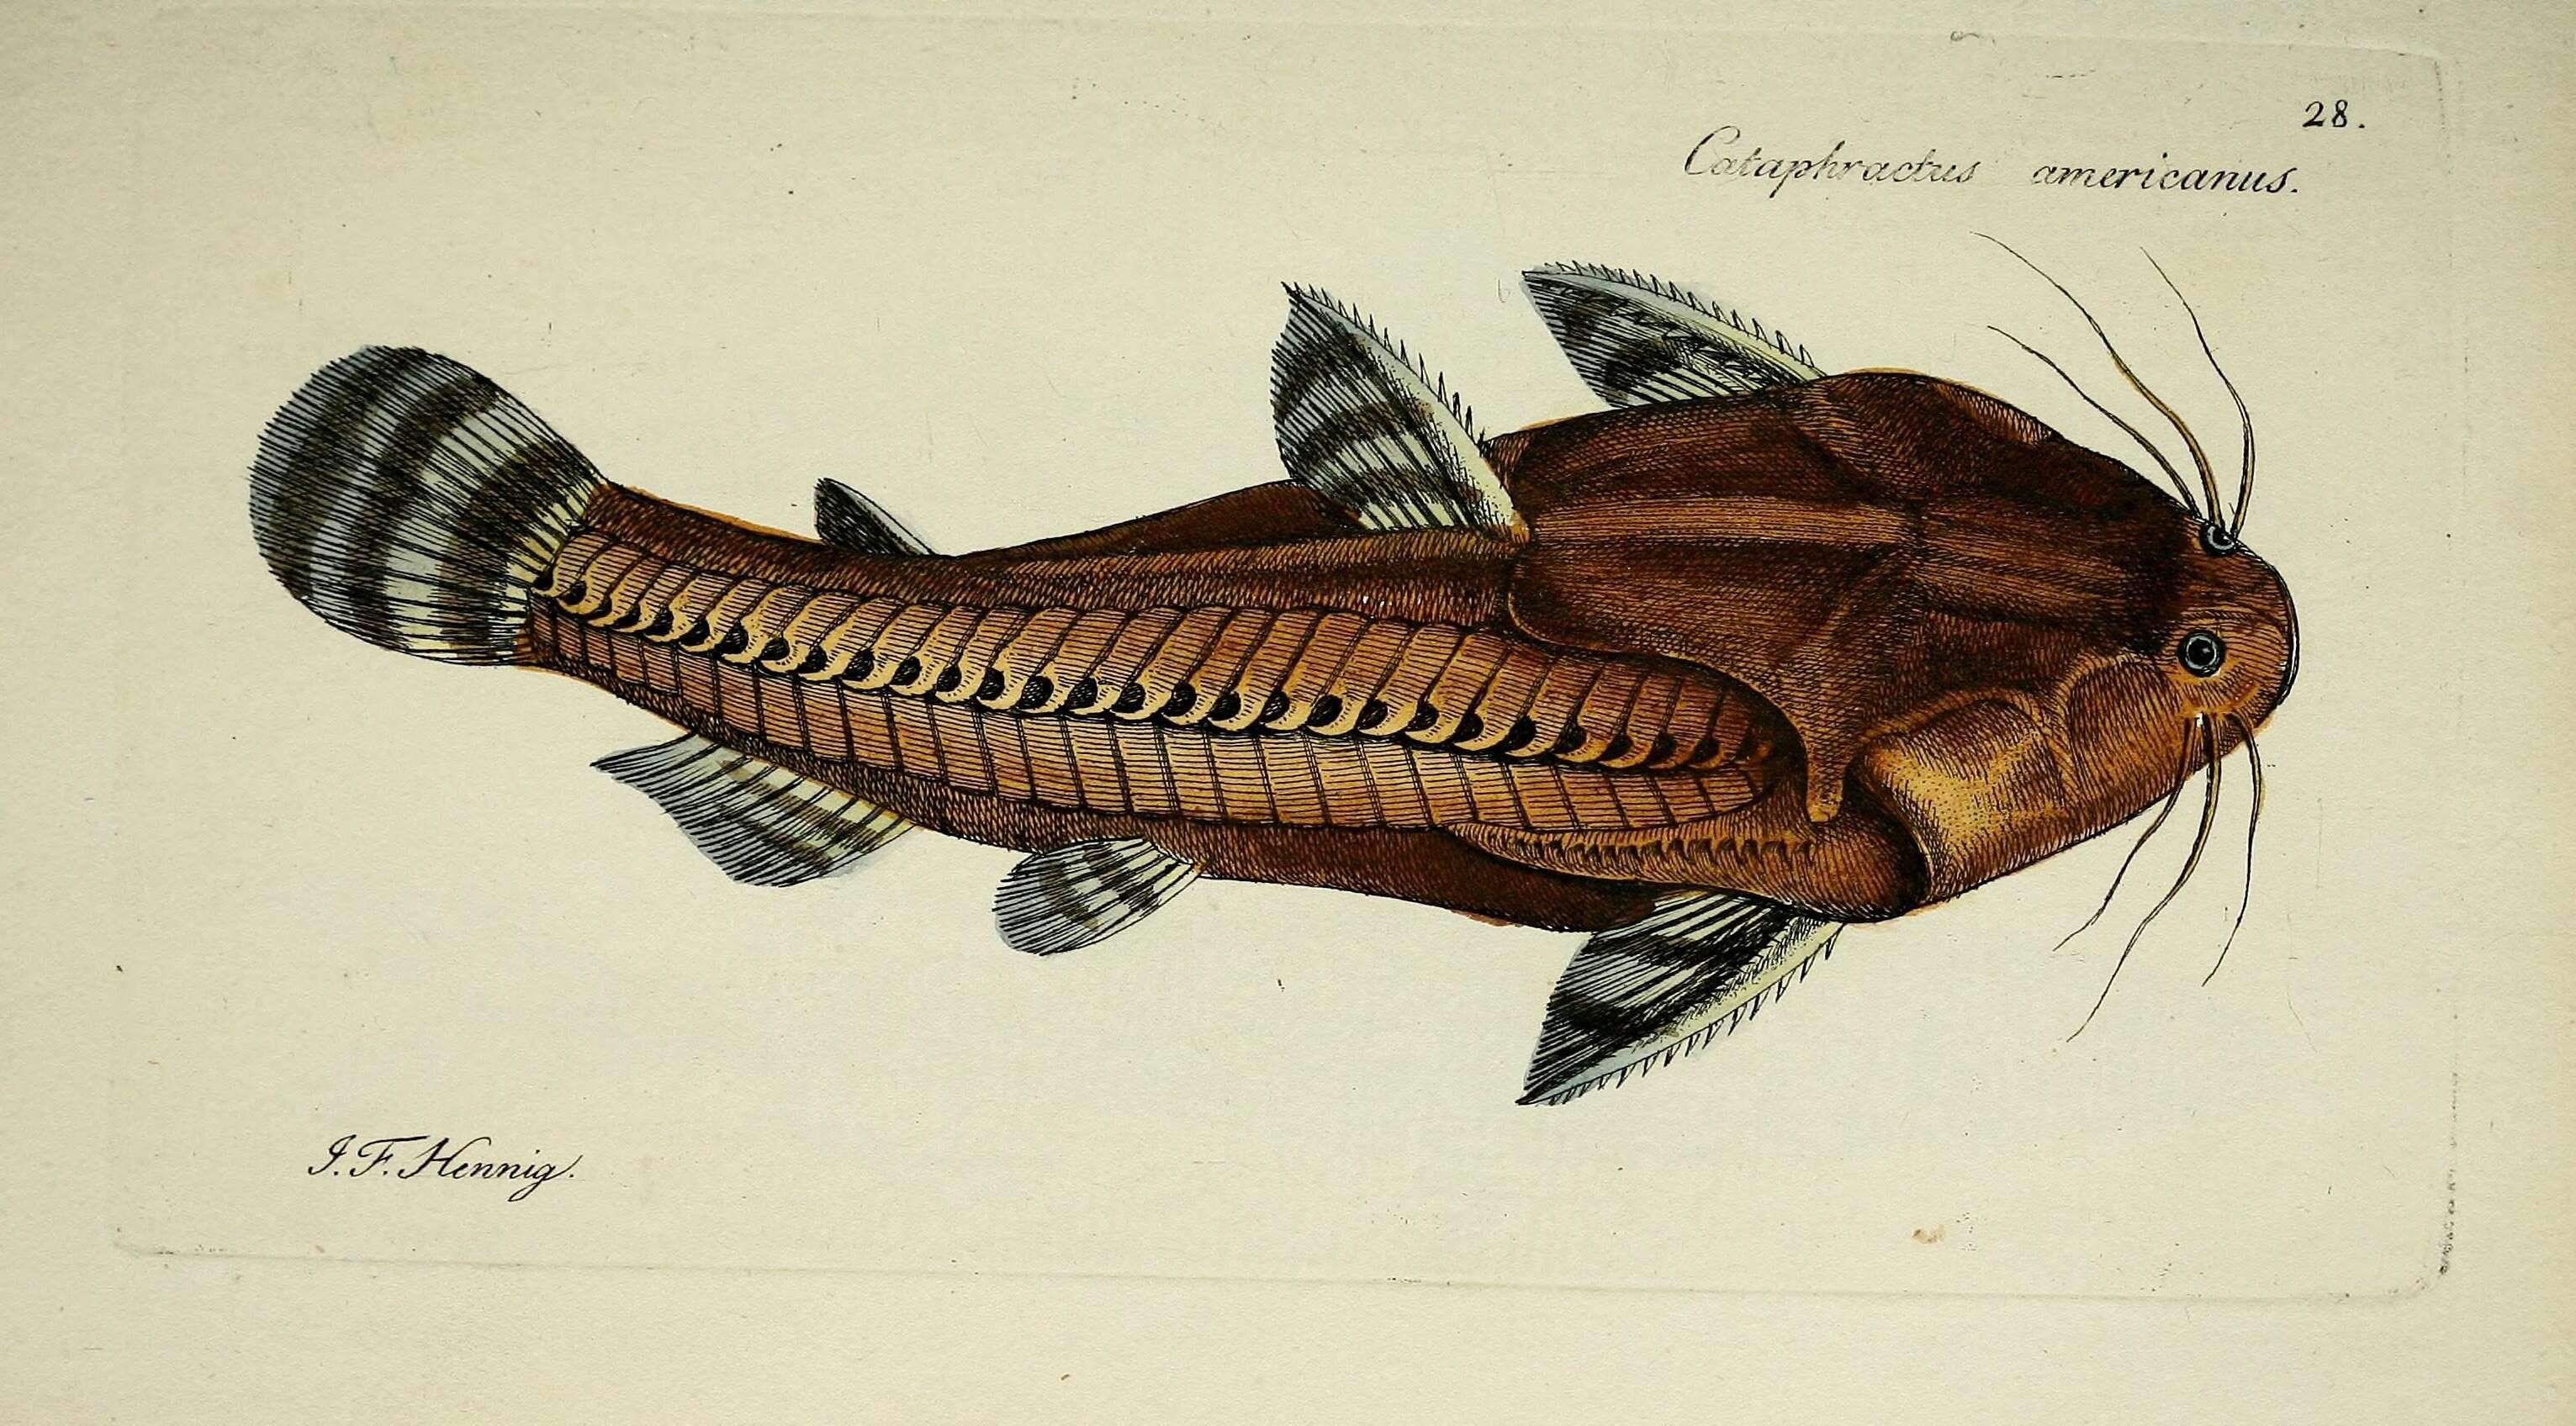 Image of Spiny catfish